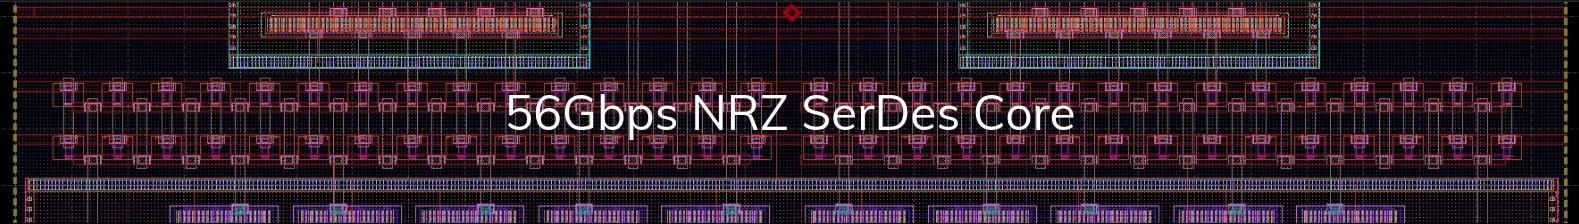 56Gbps NRZ SerDes Core Banner